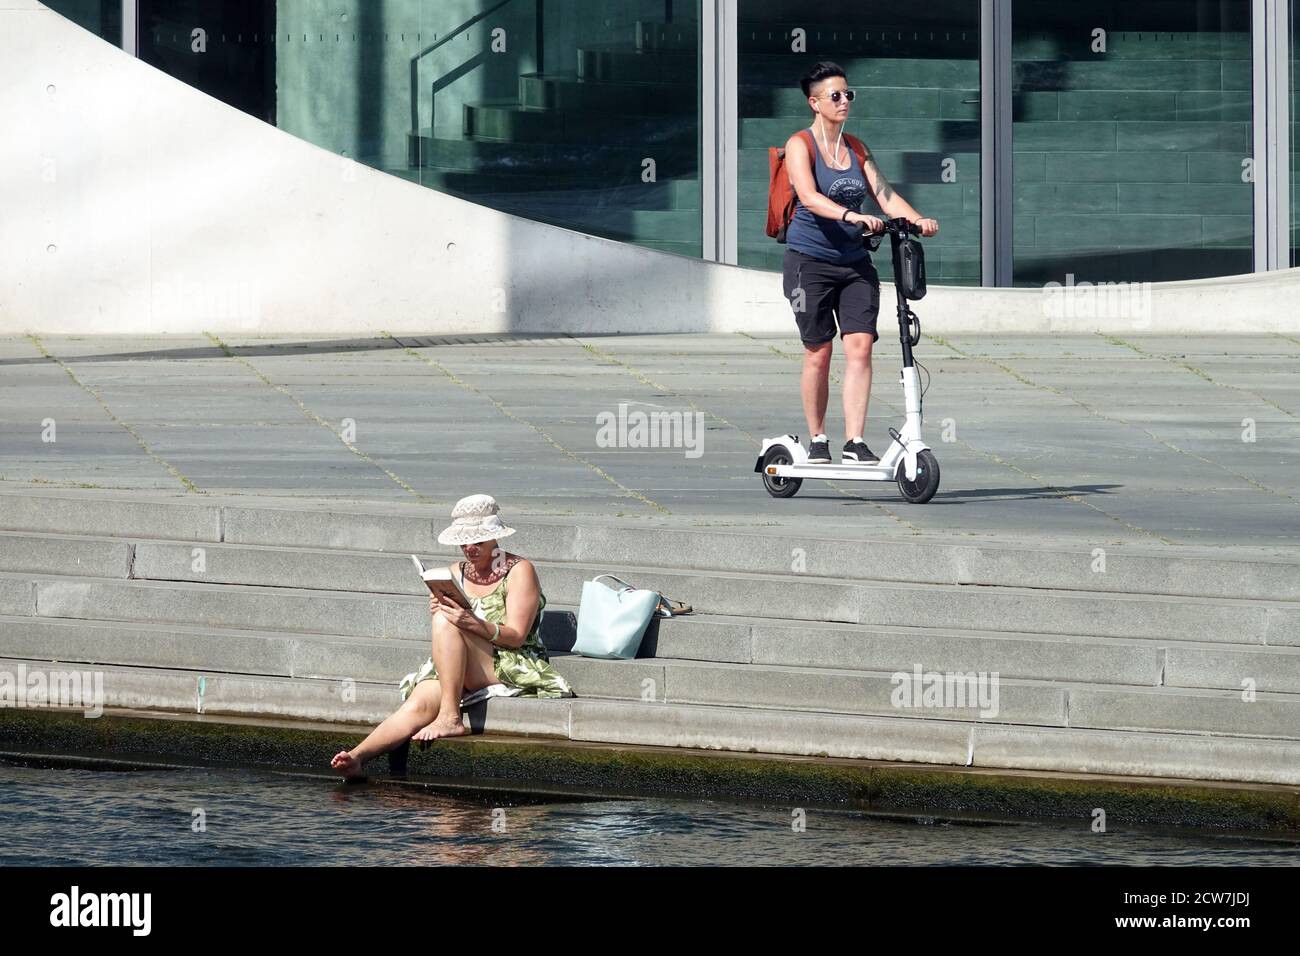 Touristes berlinois une femme sur un scooter électrique et une autre femme sur la rive de la Spree lit un livre, Allemagne, femme du tourisme lisant un livre dehors Banque D'Images